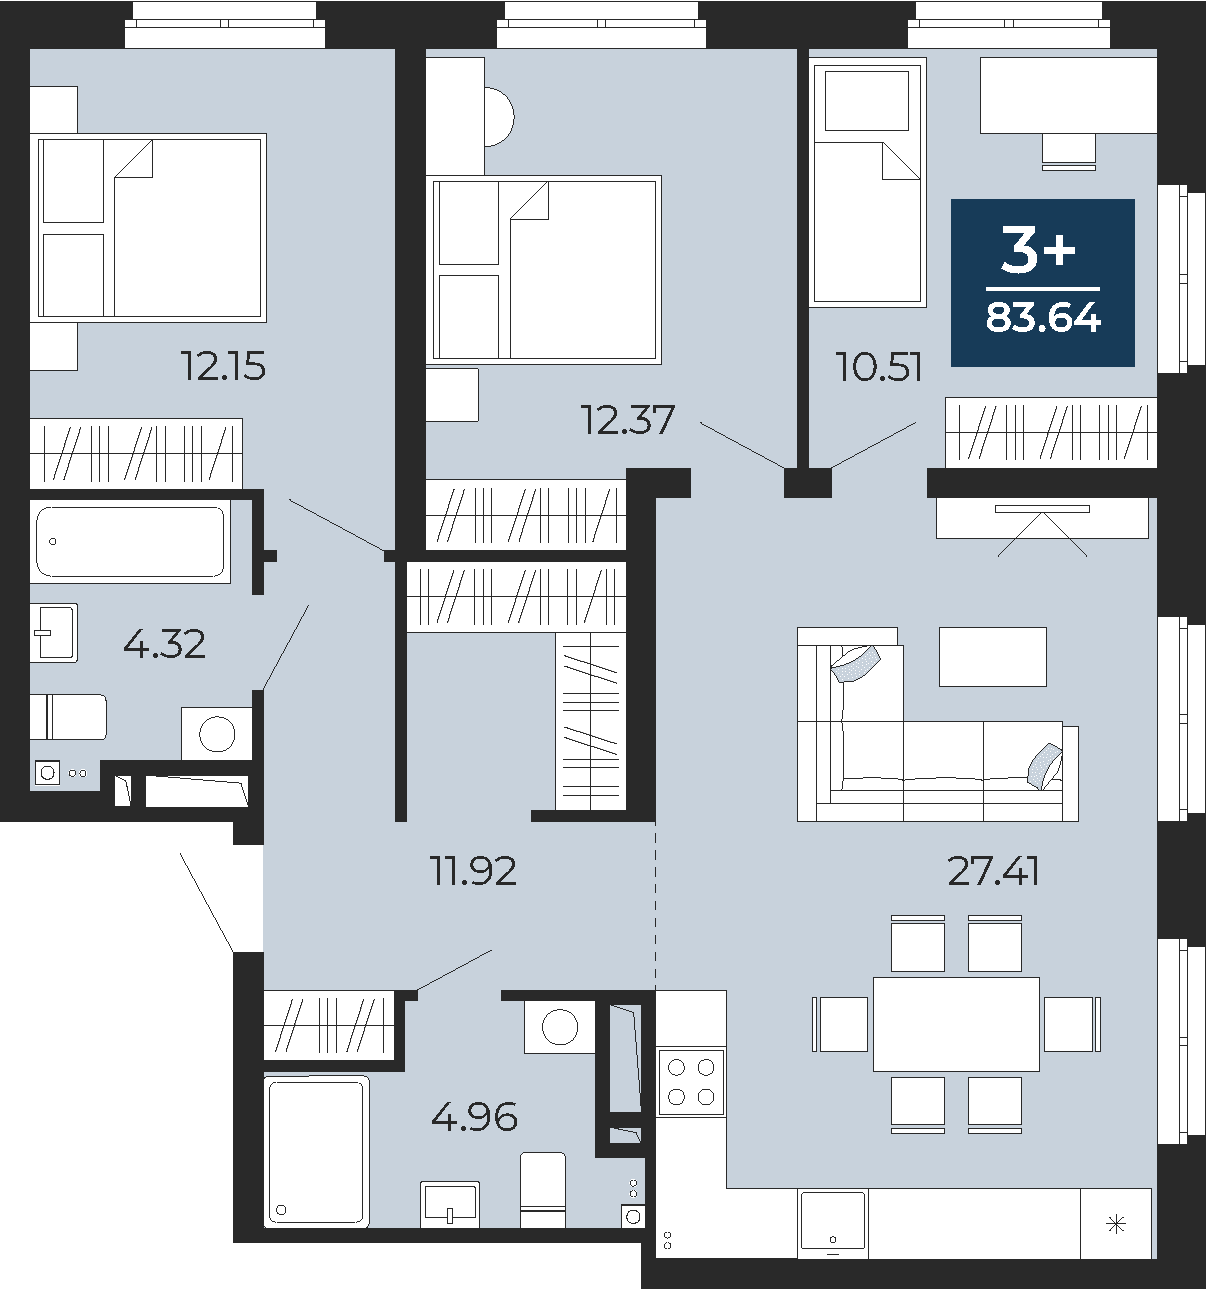 Квартира № 287, 3-комнатная, 83.64 кв. м, 22 этаж